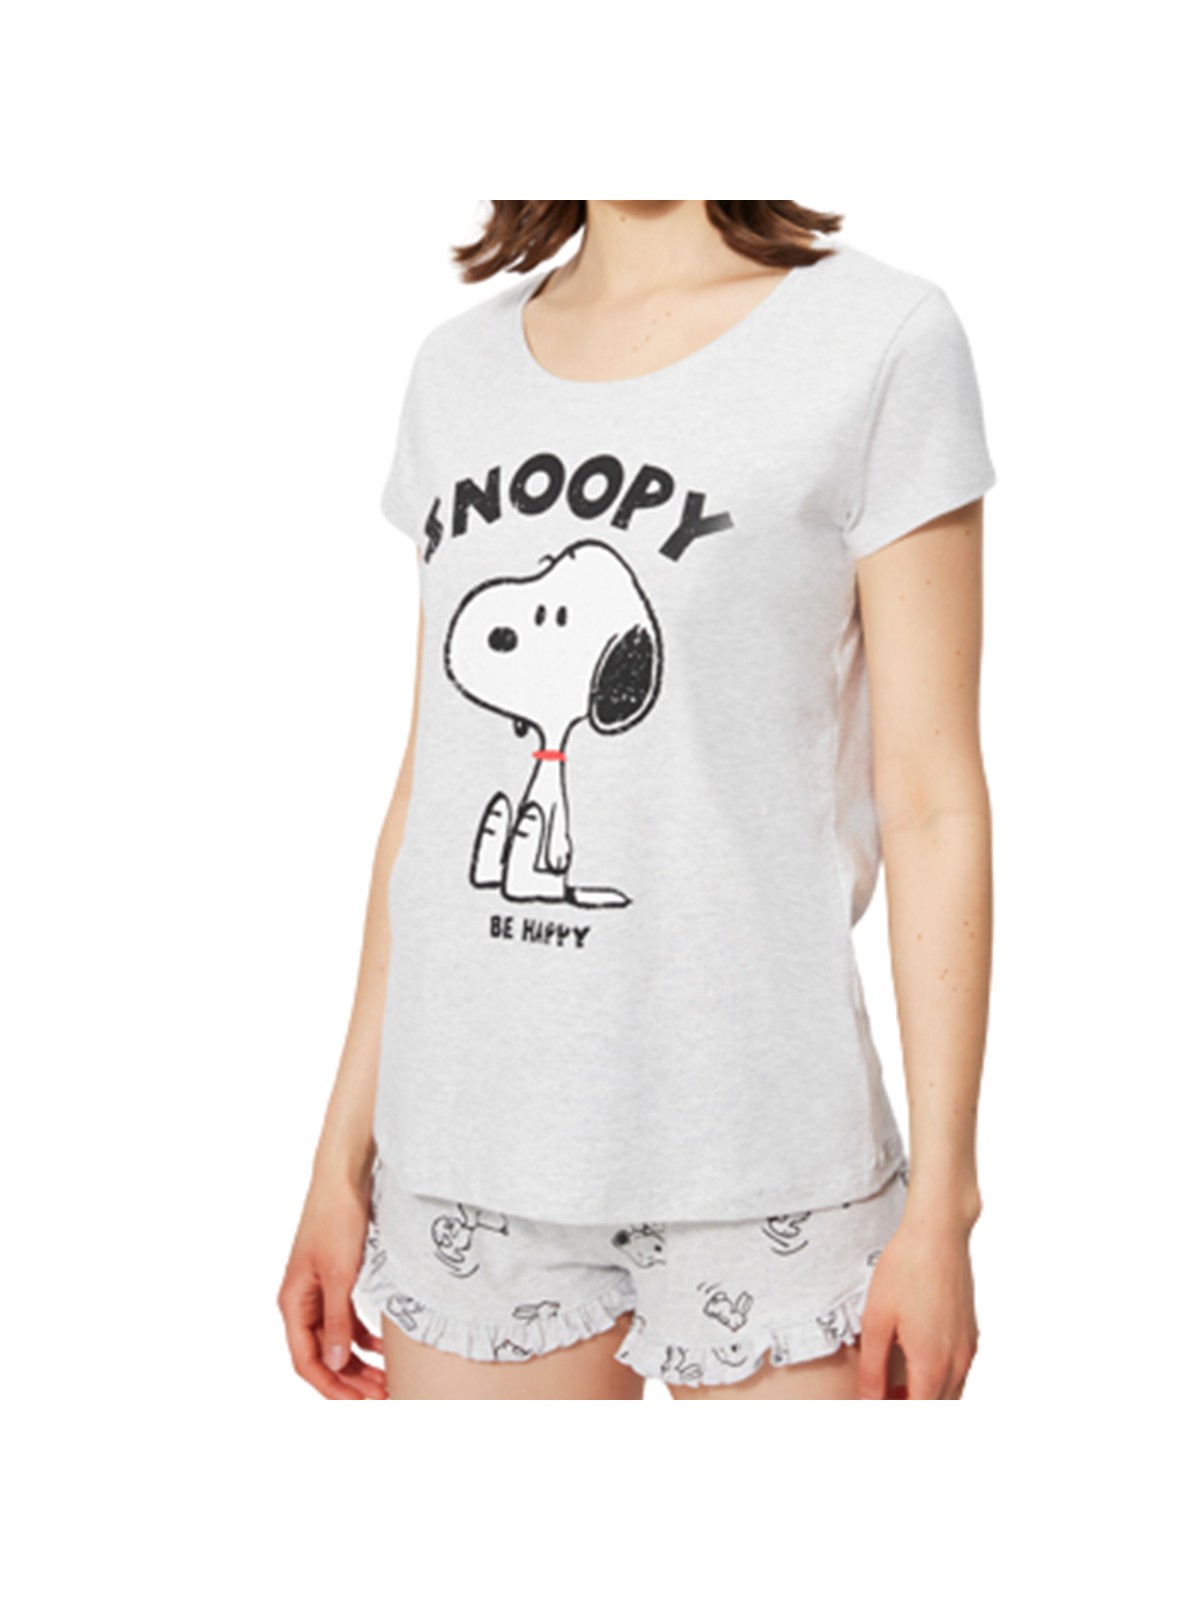 Snoopy Pajamas Women